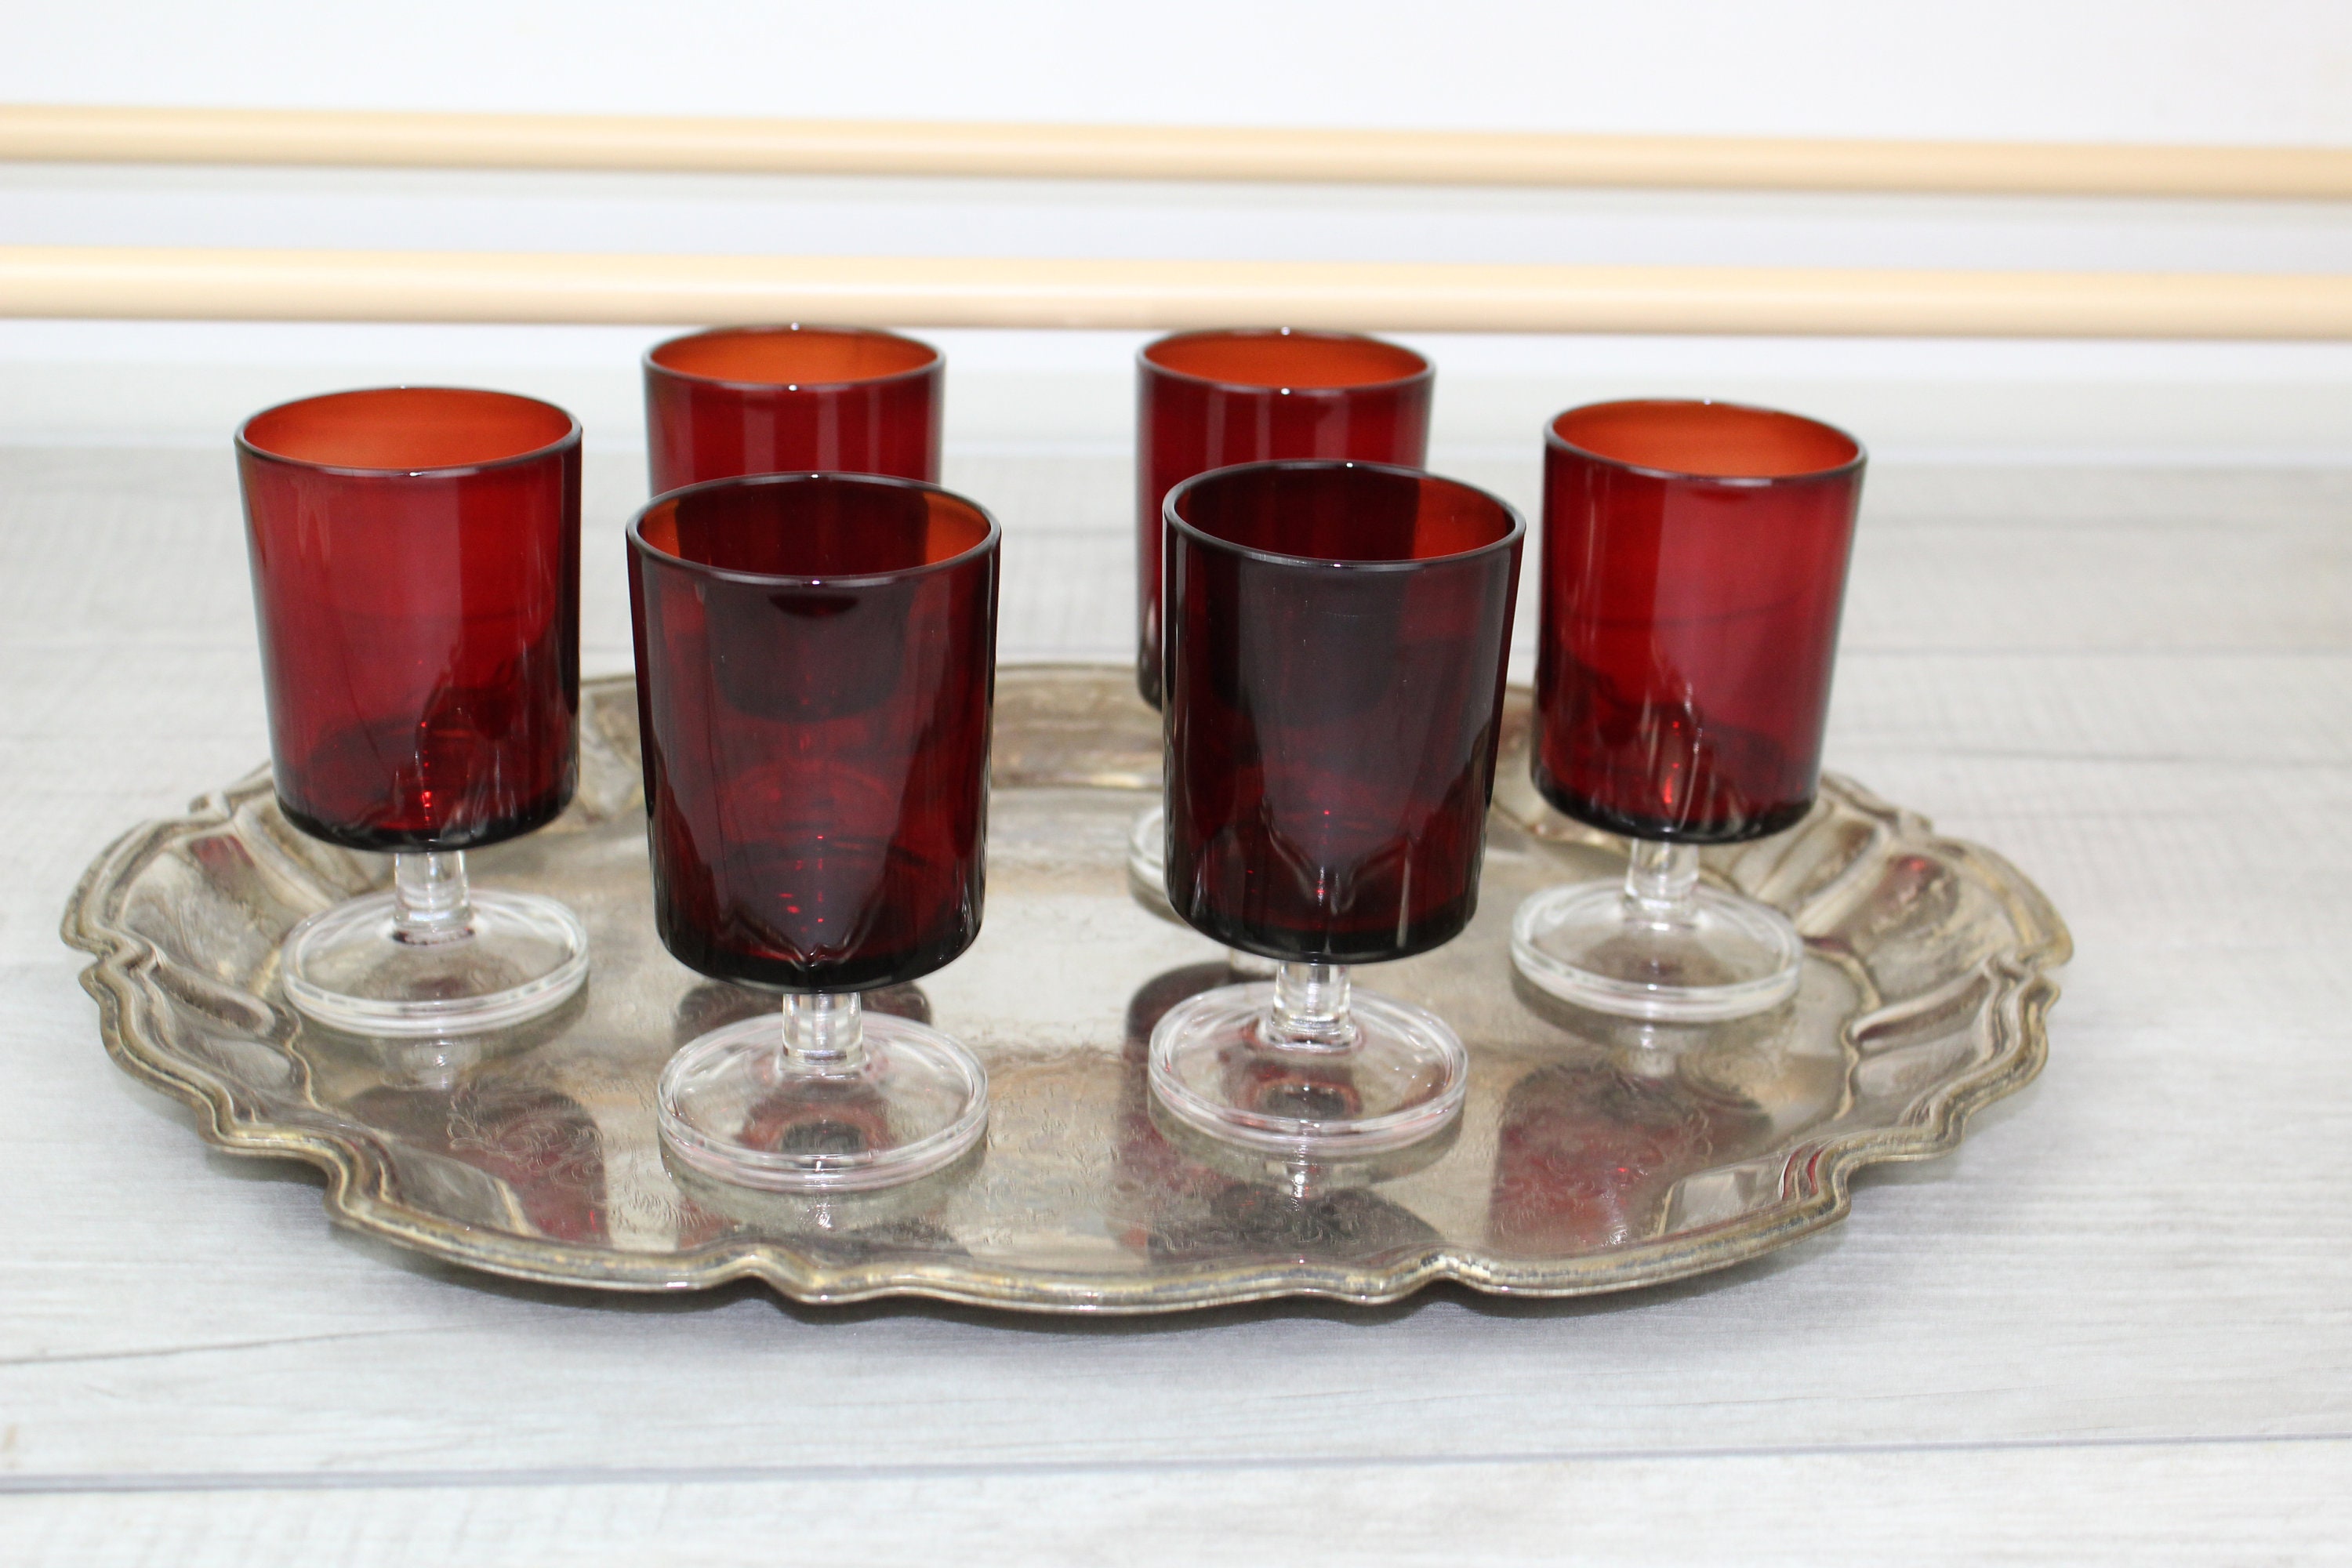 4 Vintage Ruby Red France Large Wine / Water Glasses - Luminarc Water  Glasses or Goblets - Vintage Red Glassware Stemware